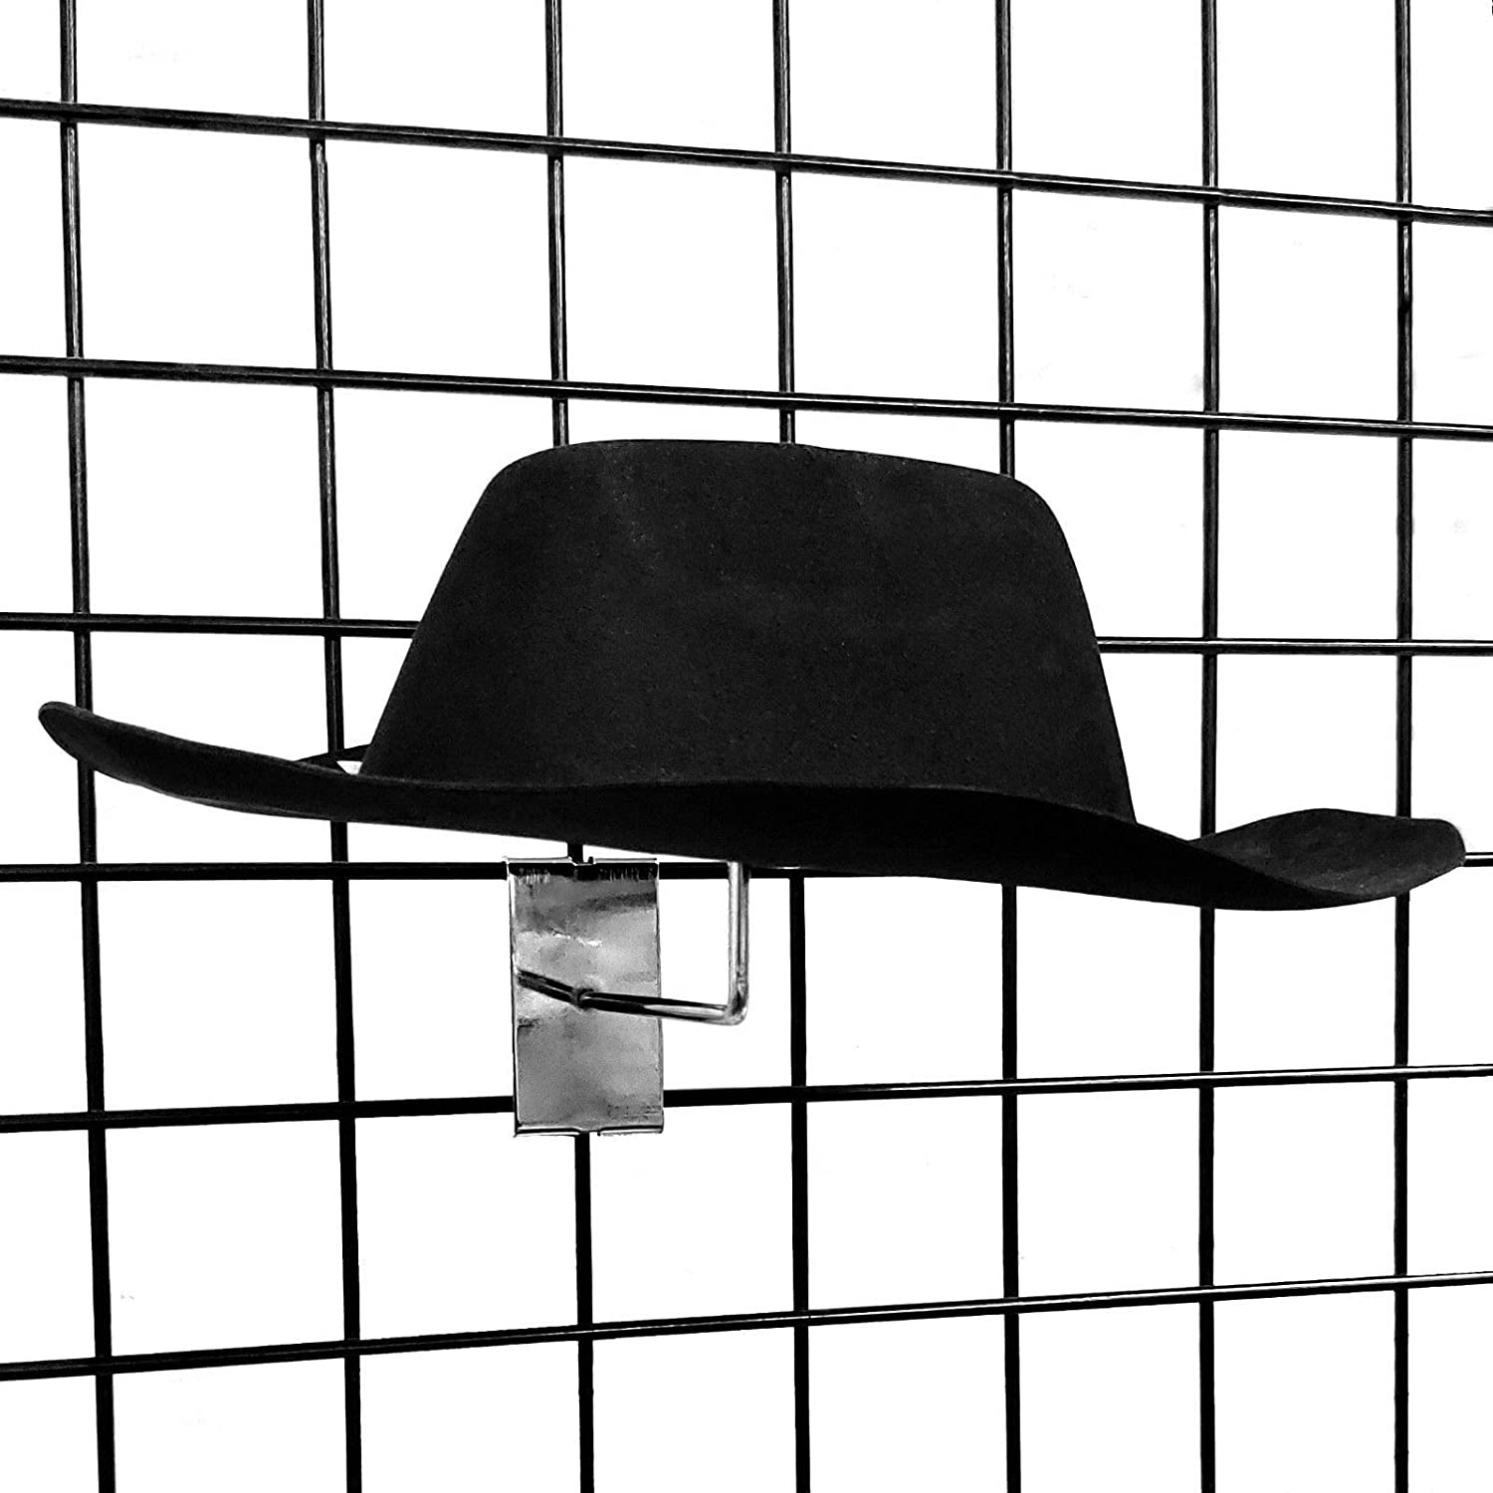 Gridwall Single Hat Display, Grid Panel Millinery Headwear Display Rack, Black, 10 Pack